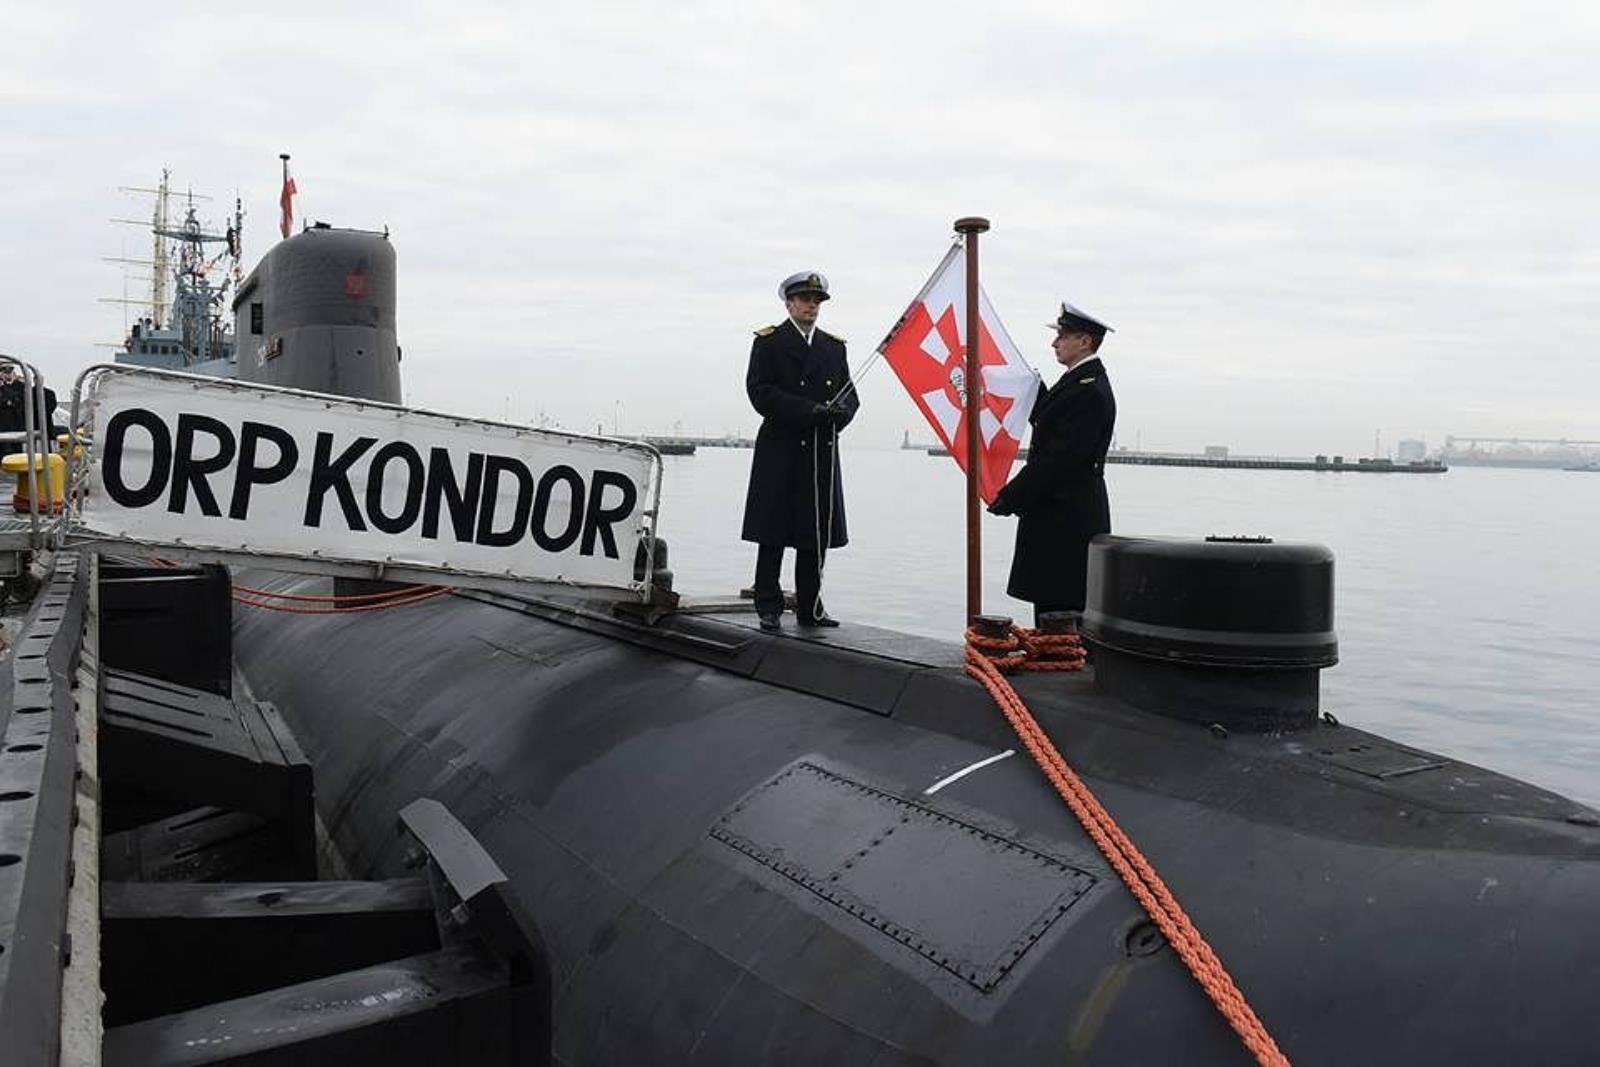 polski okręt podwodny, ORP Kondor